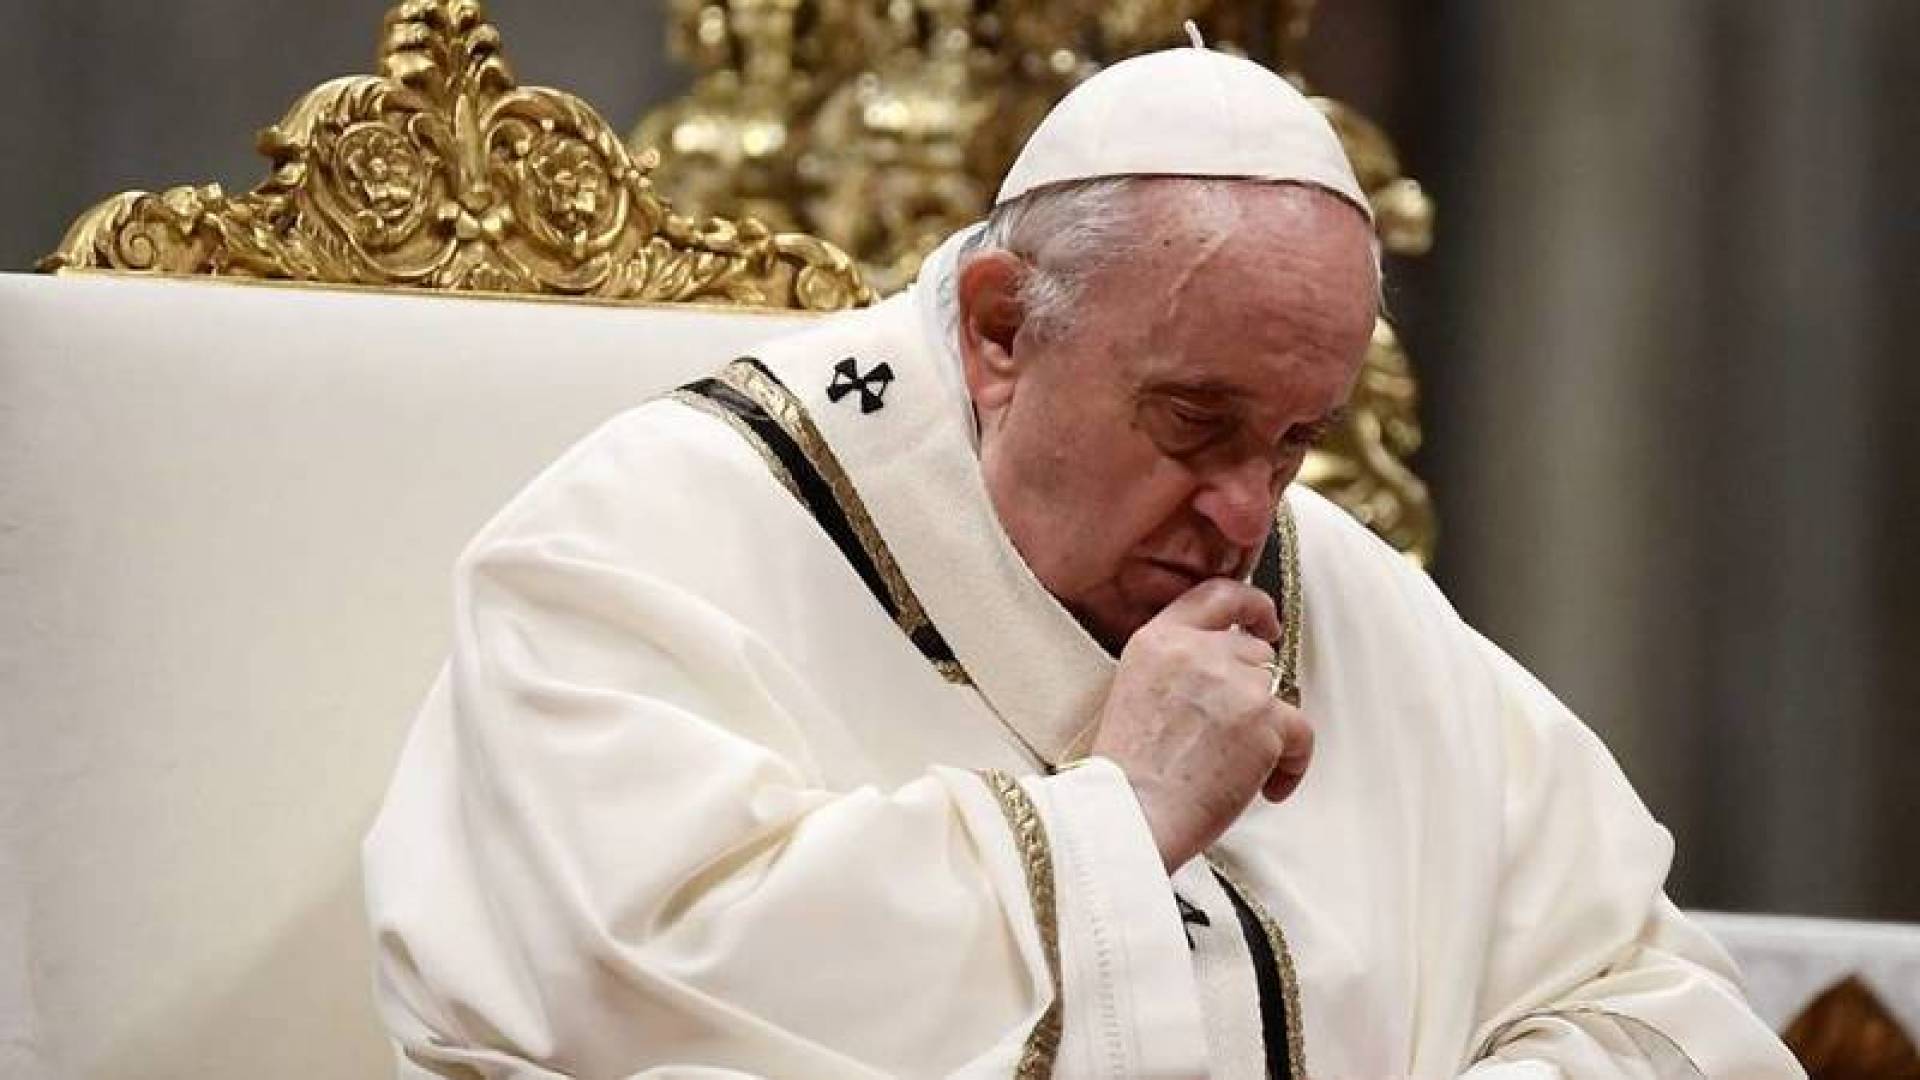 لأول مرة البابا فرنسيس يعلن عن توقيعه خطاب استقالته منذ 2013! كشف عن سبب قيامه بذلك